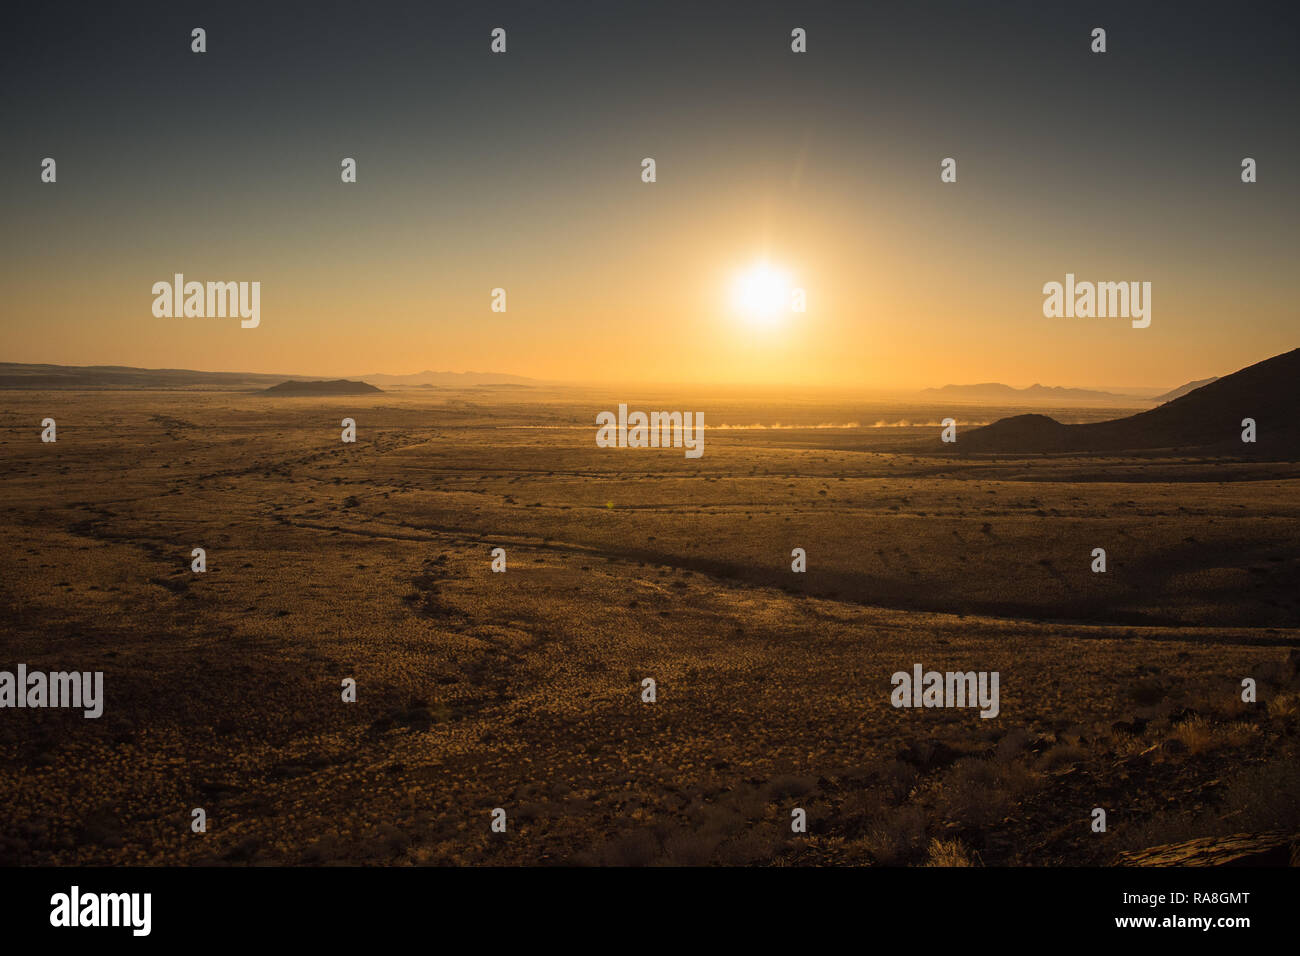 Sunset in the namibien desert Stock Photo